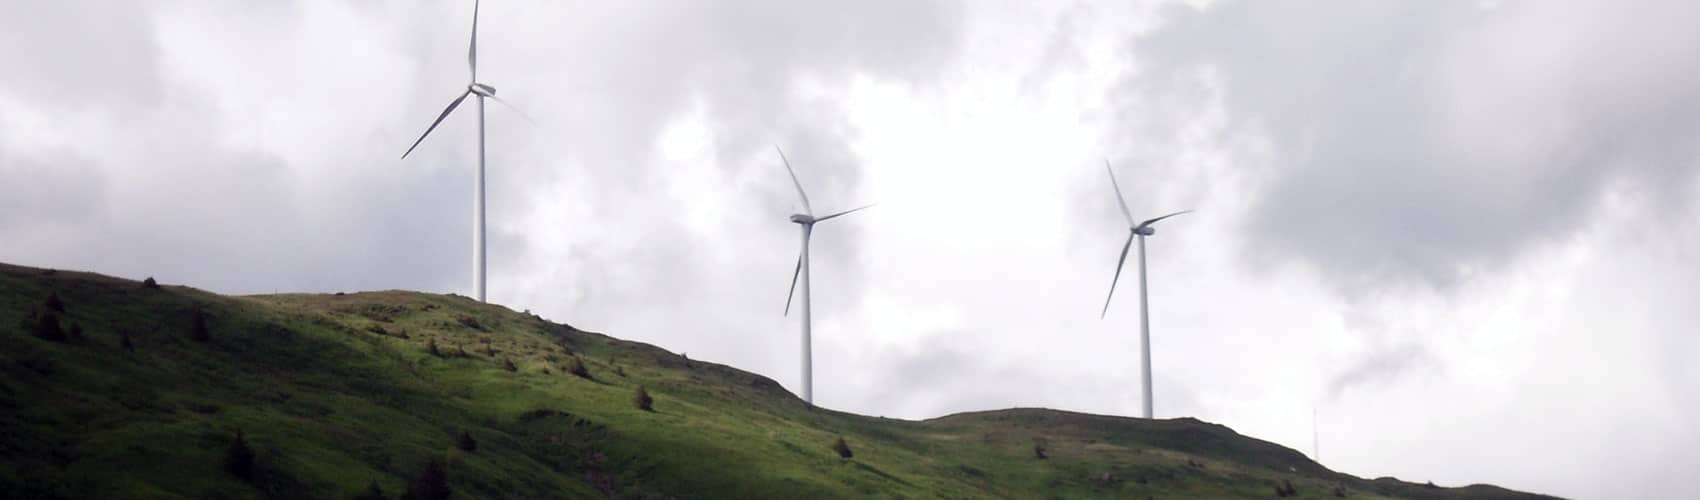 Three windmills on a hillside in Kodiak, Alaska